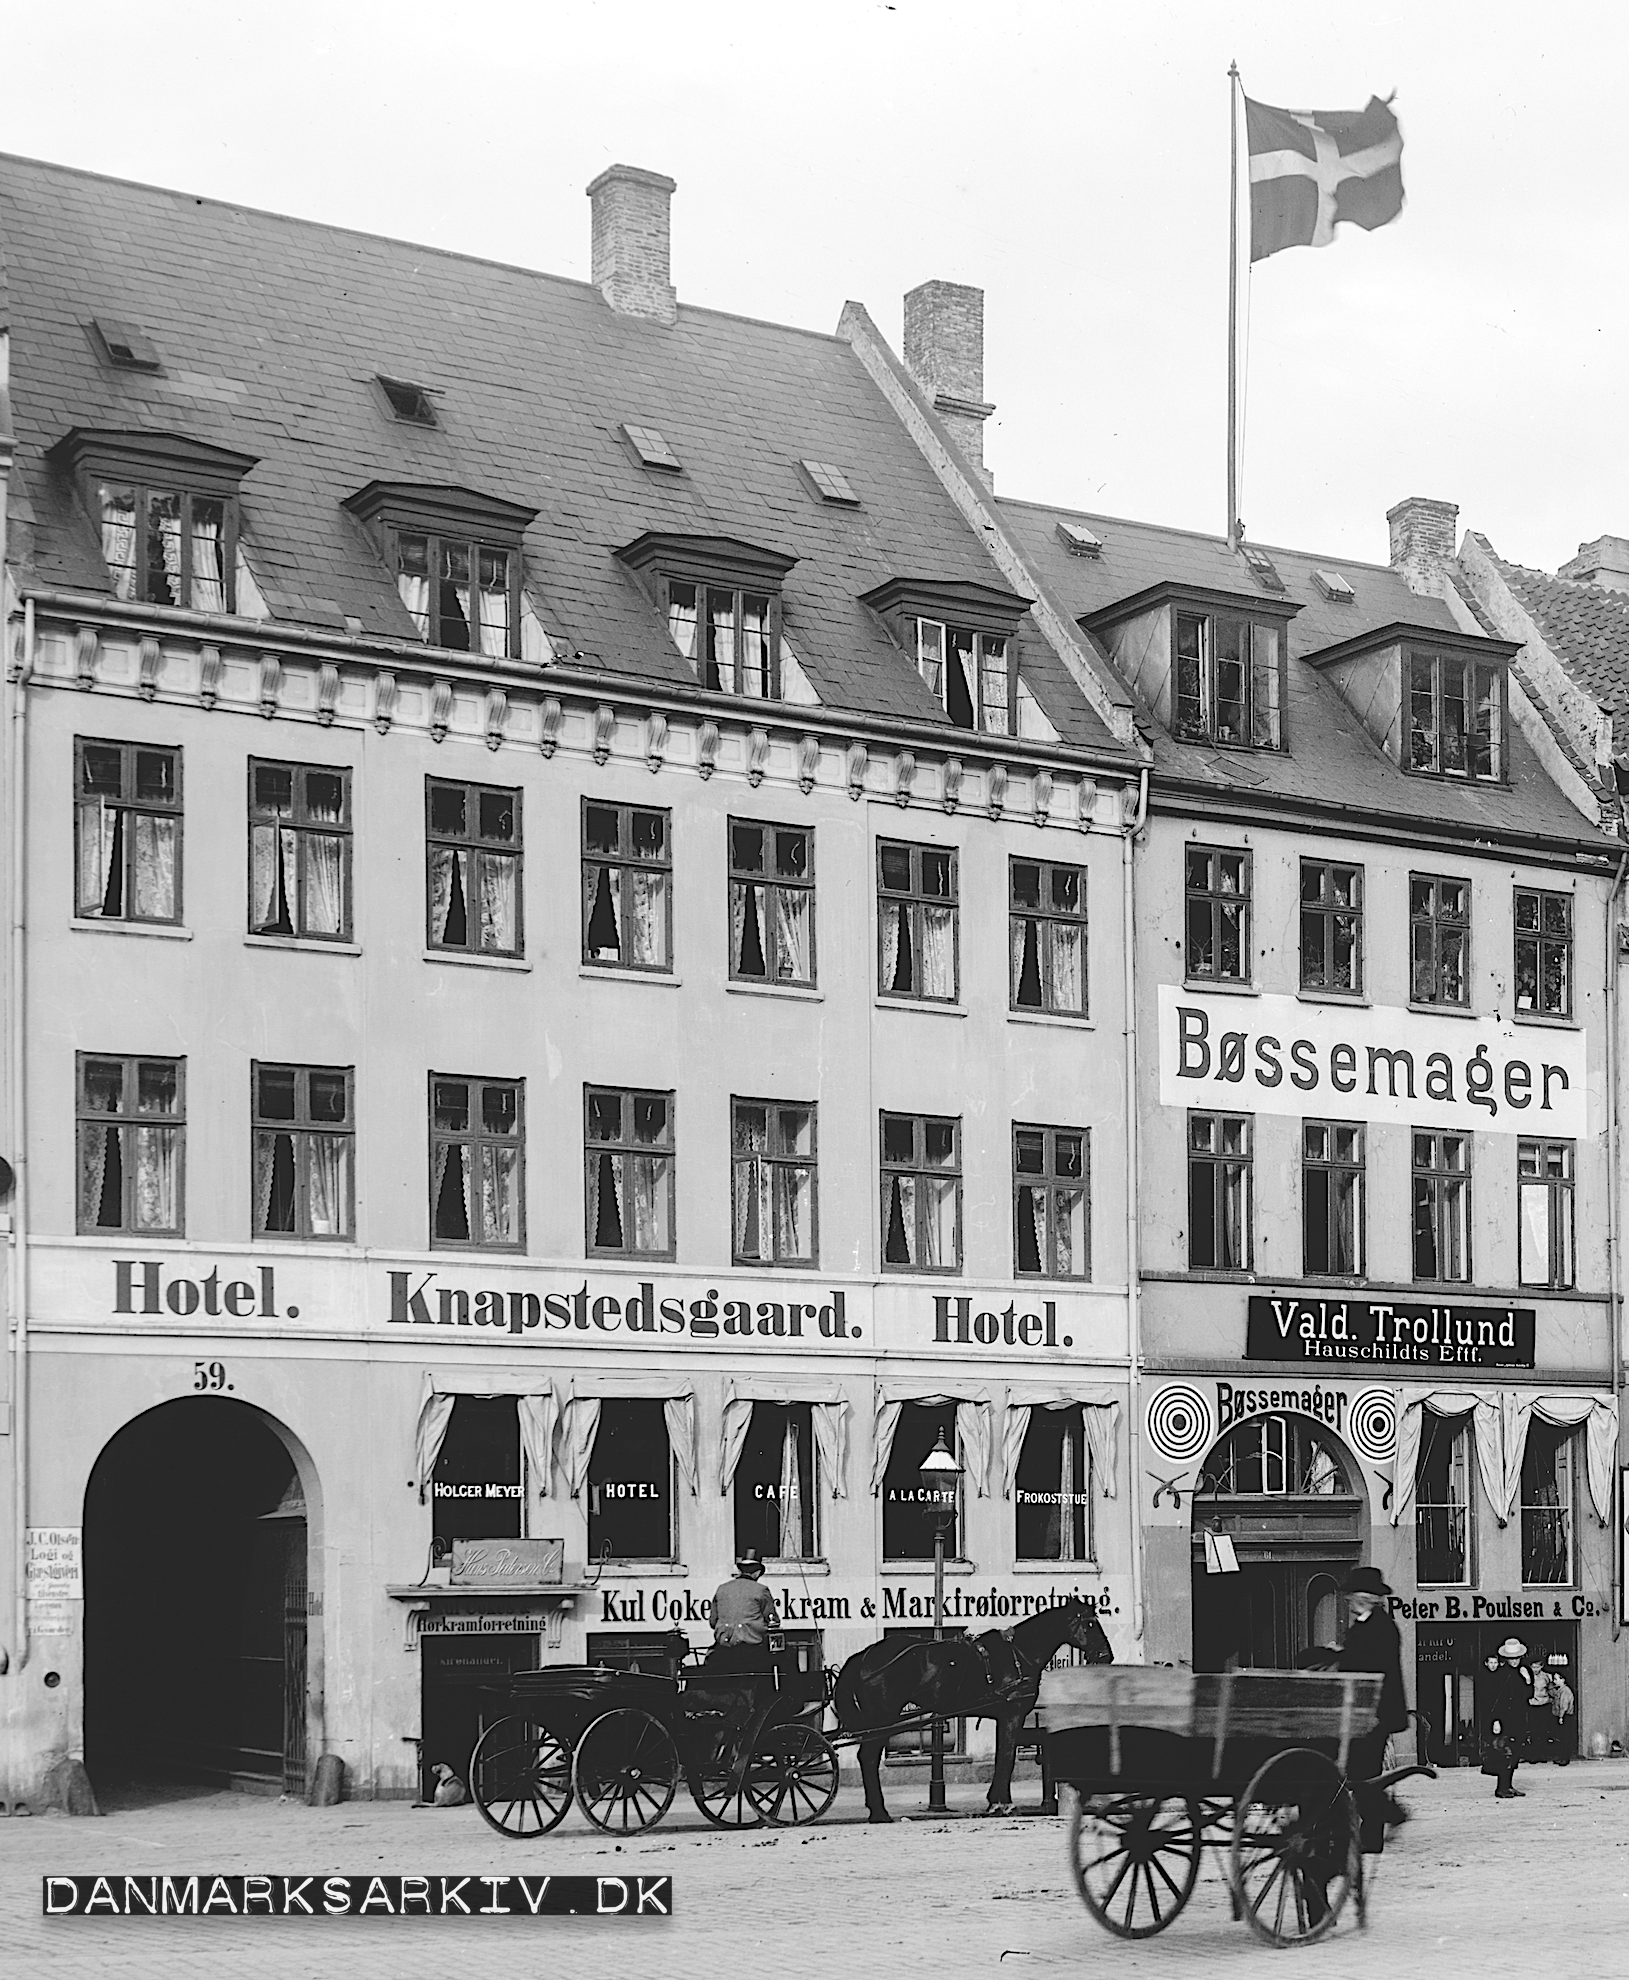 Hotel Knabstedsgaard - Bøssemager Cito - 1903